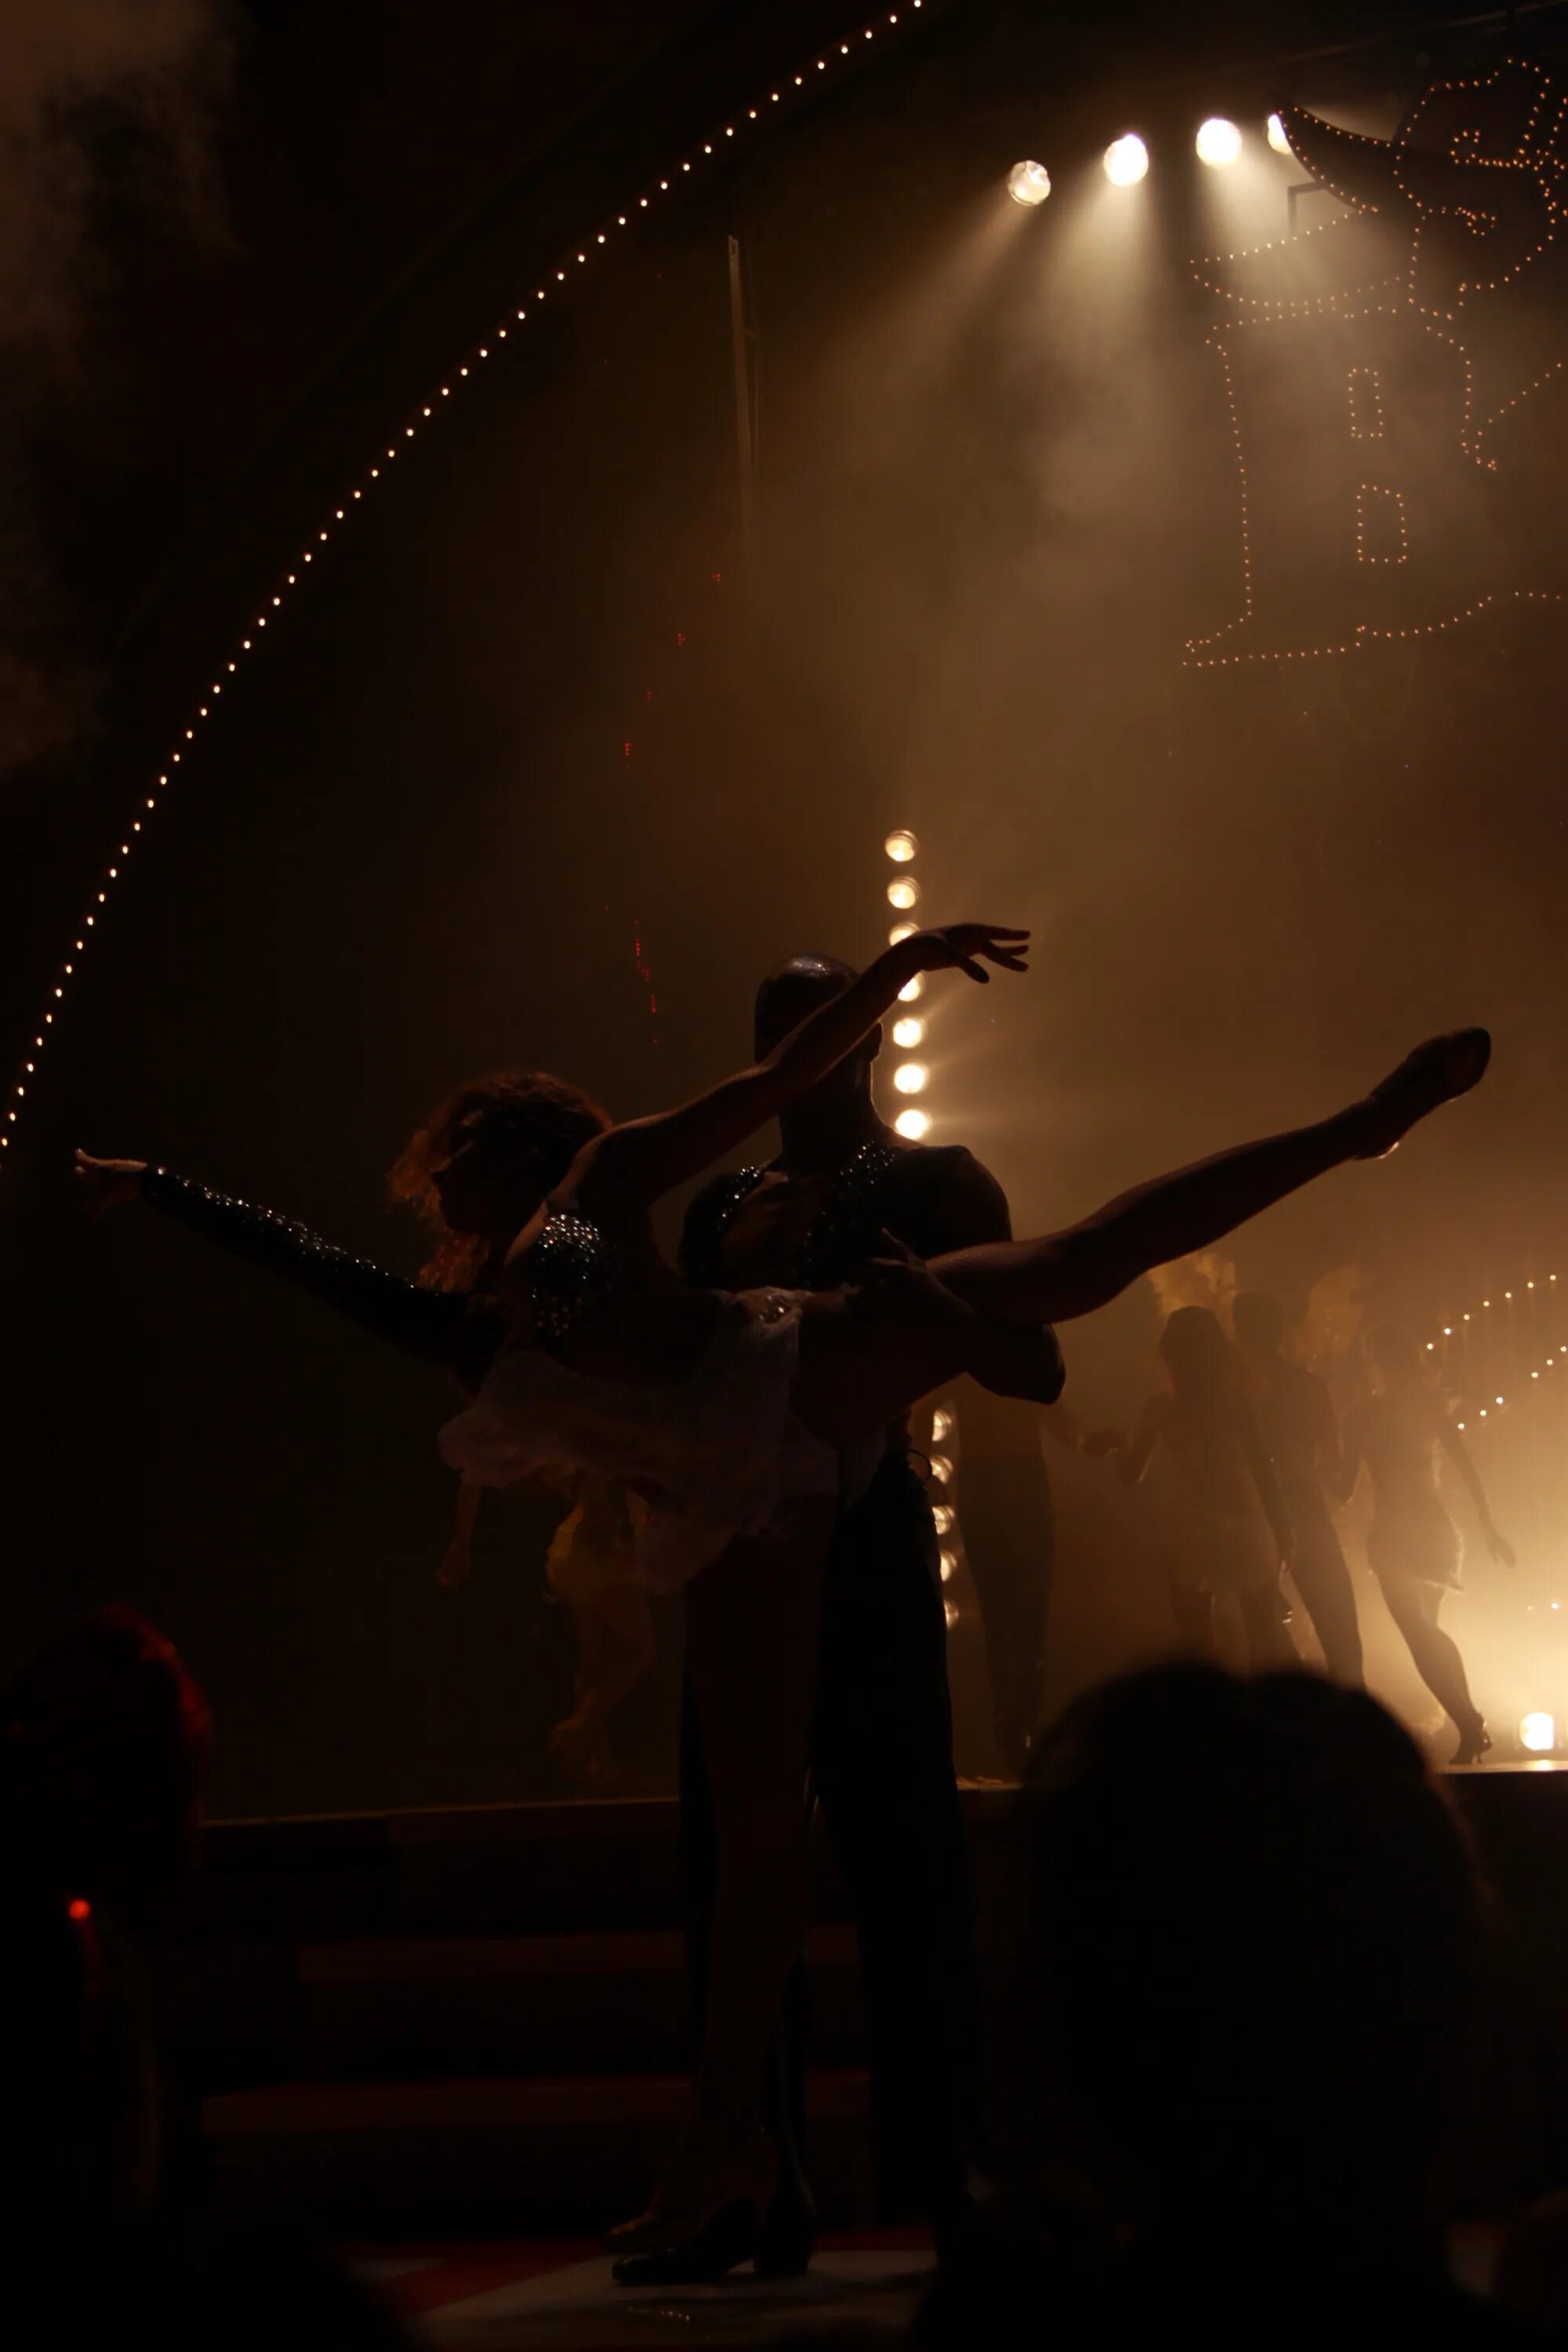 Ночные танцы. Танцы в темноте. Девушка танцует на сцене. Пара танцует на сцене. Показалось в темноте